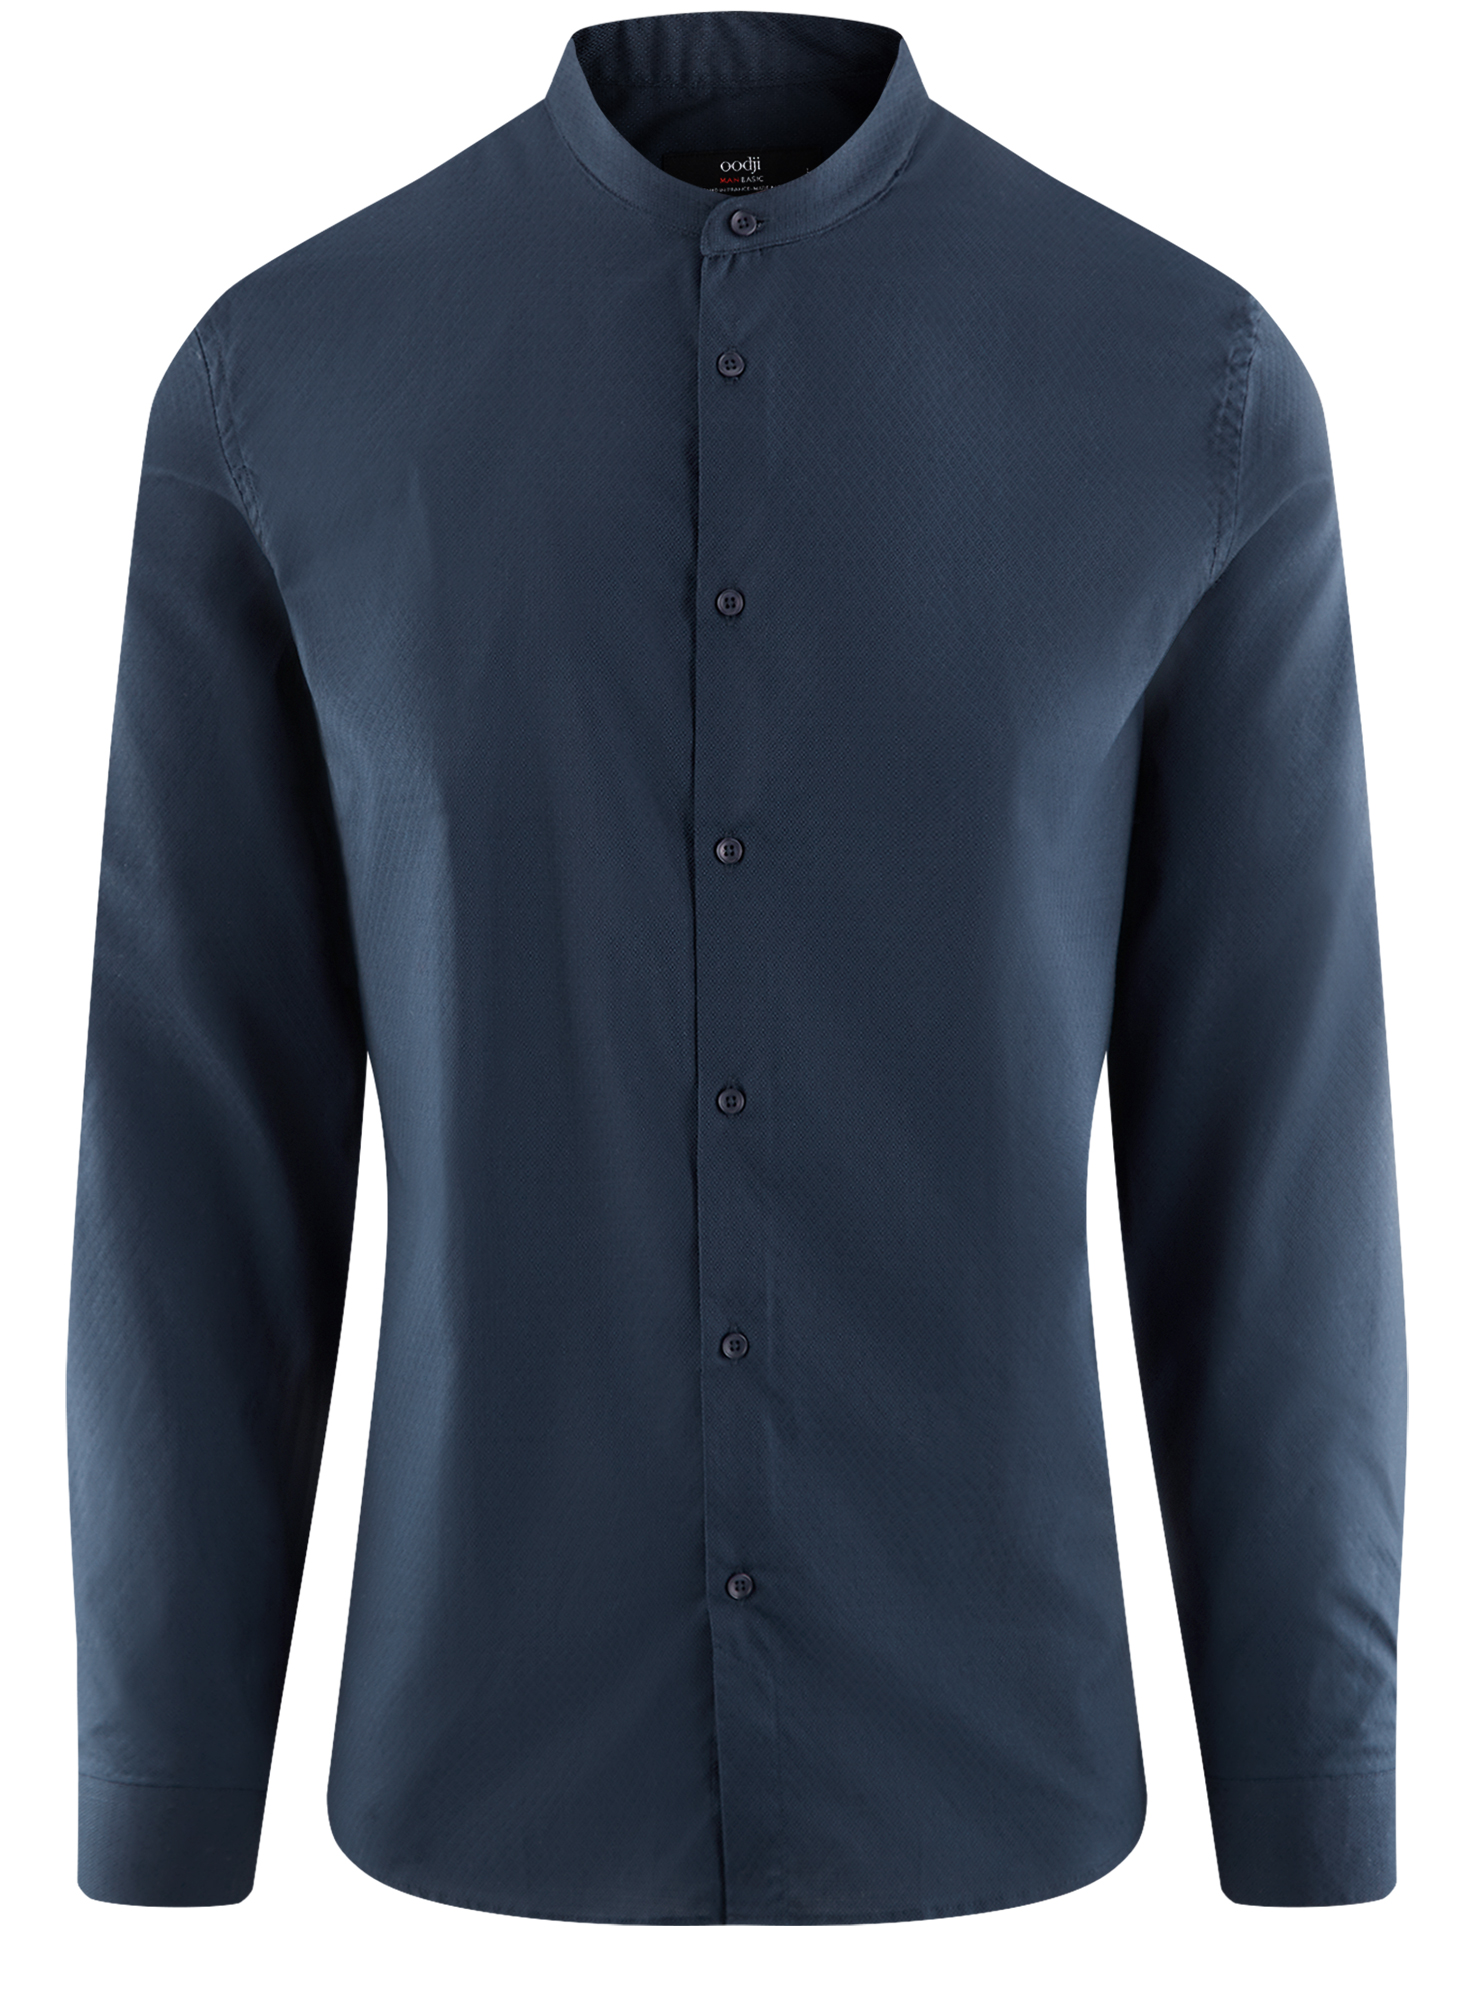 Рубашка мужская oodji 3B140004M-1 синяя XL